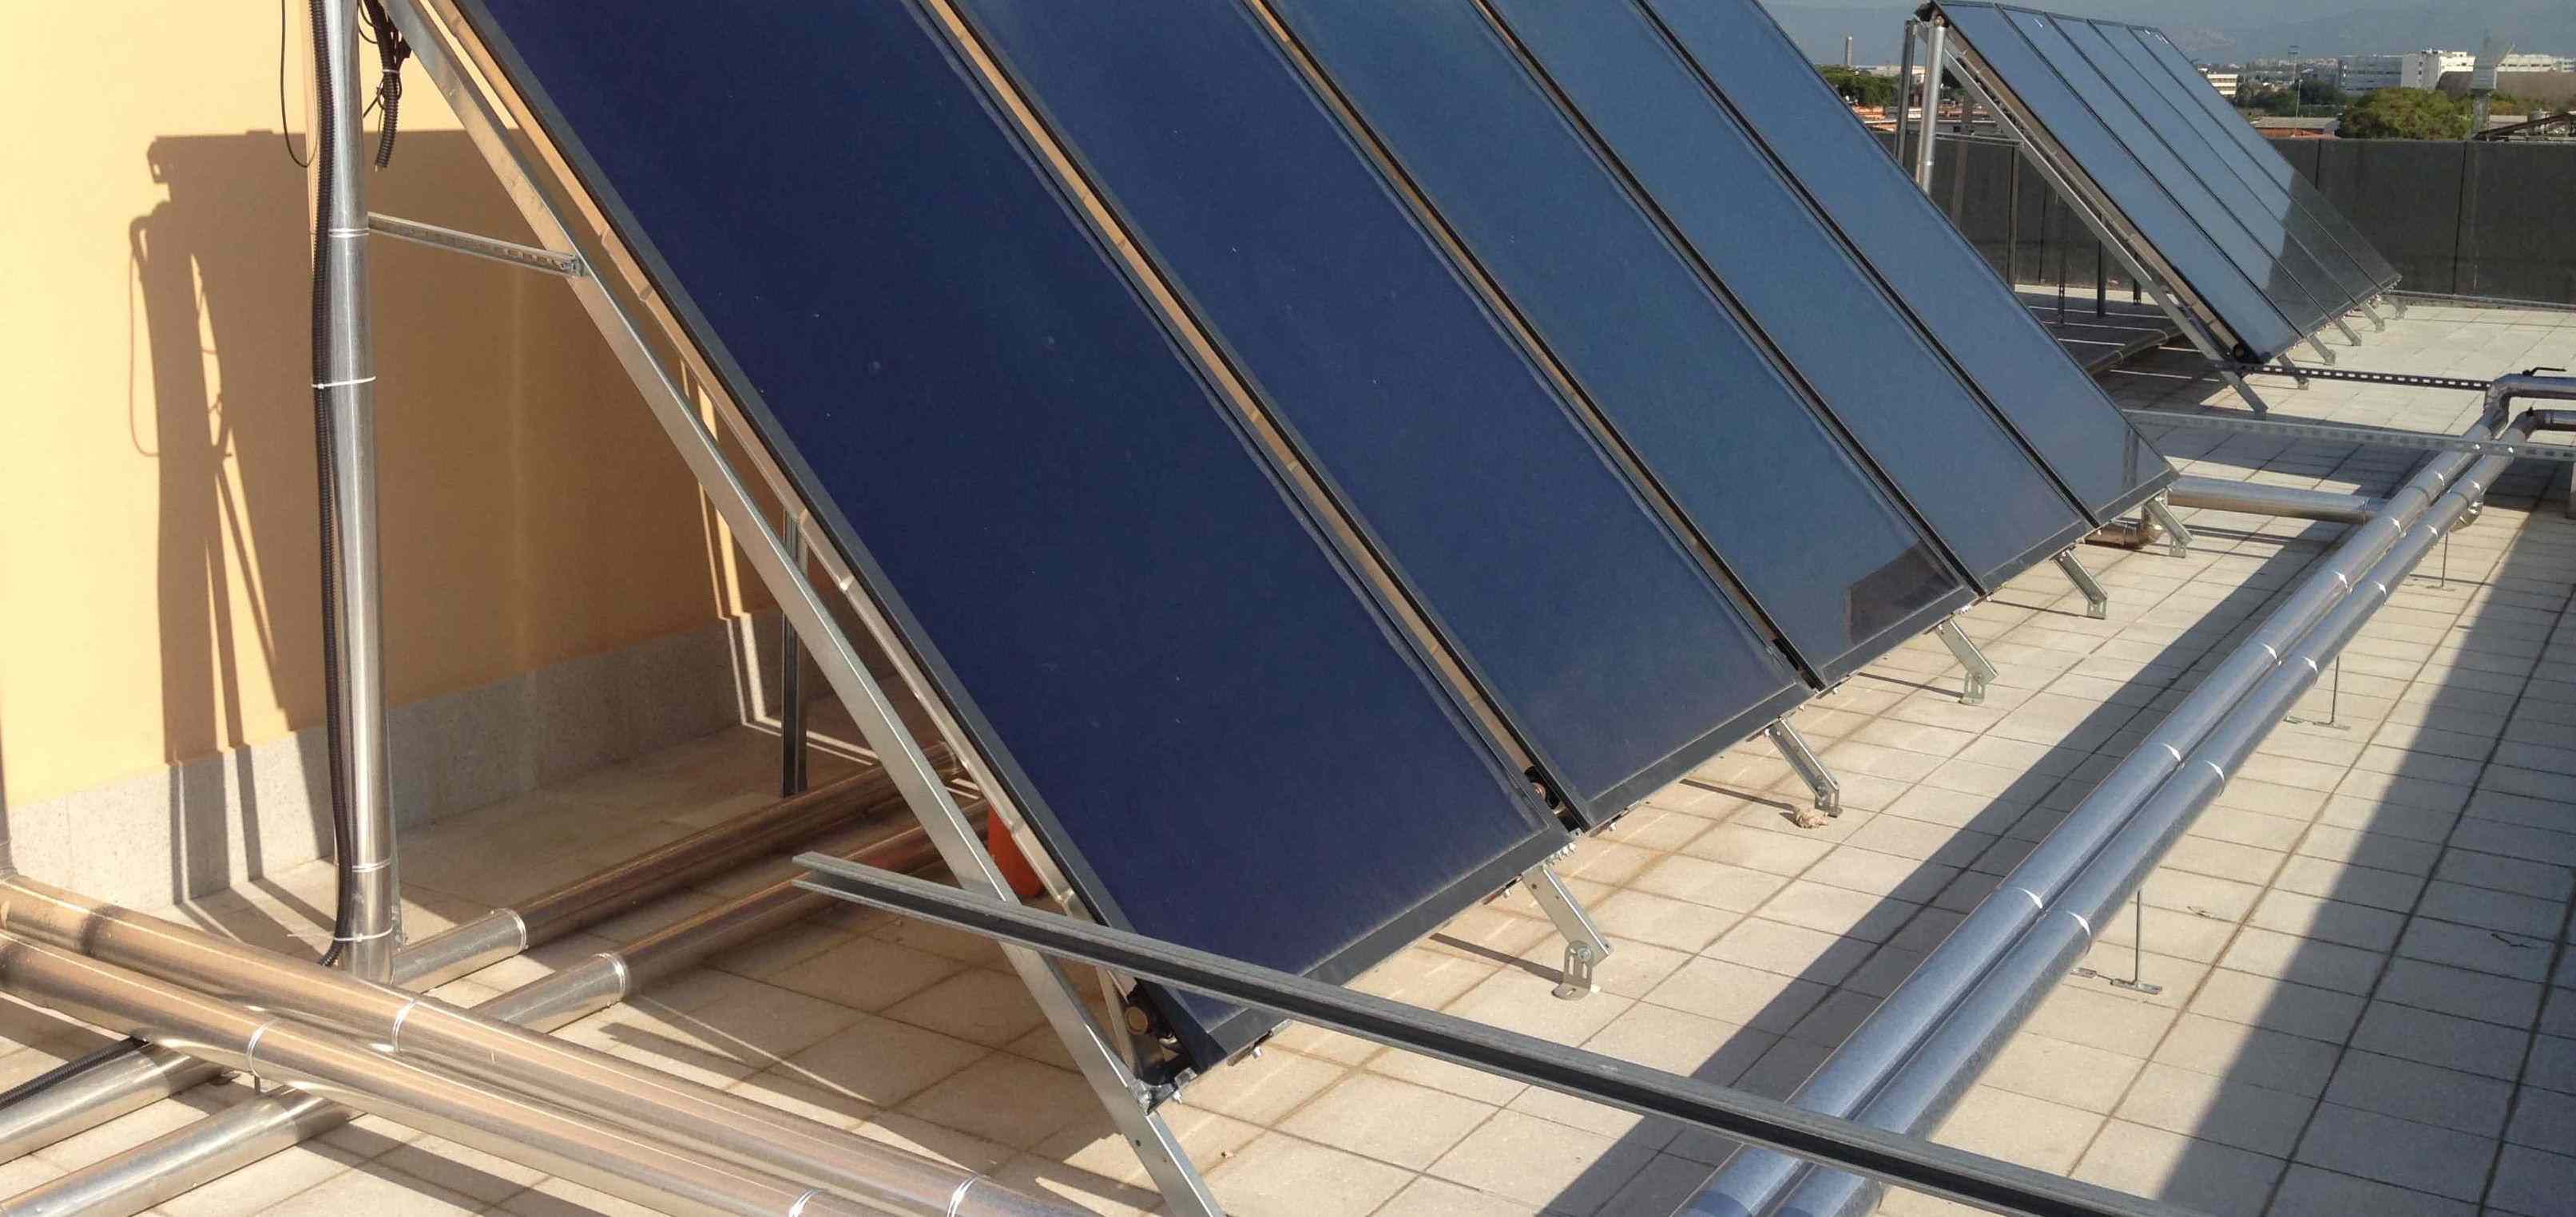 Collettore solare ad integrazione bollitore ACS